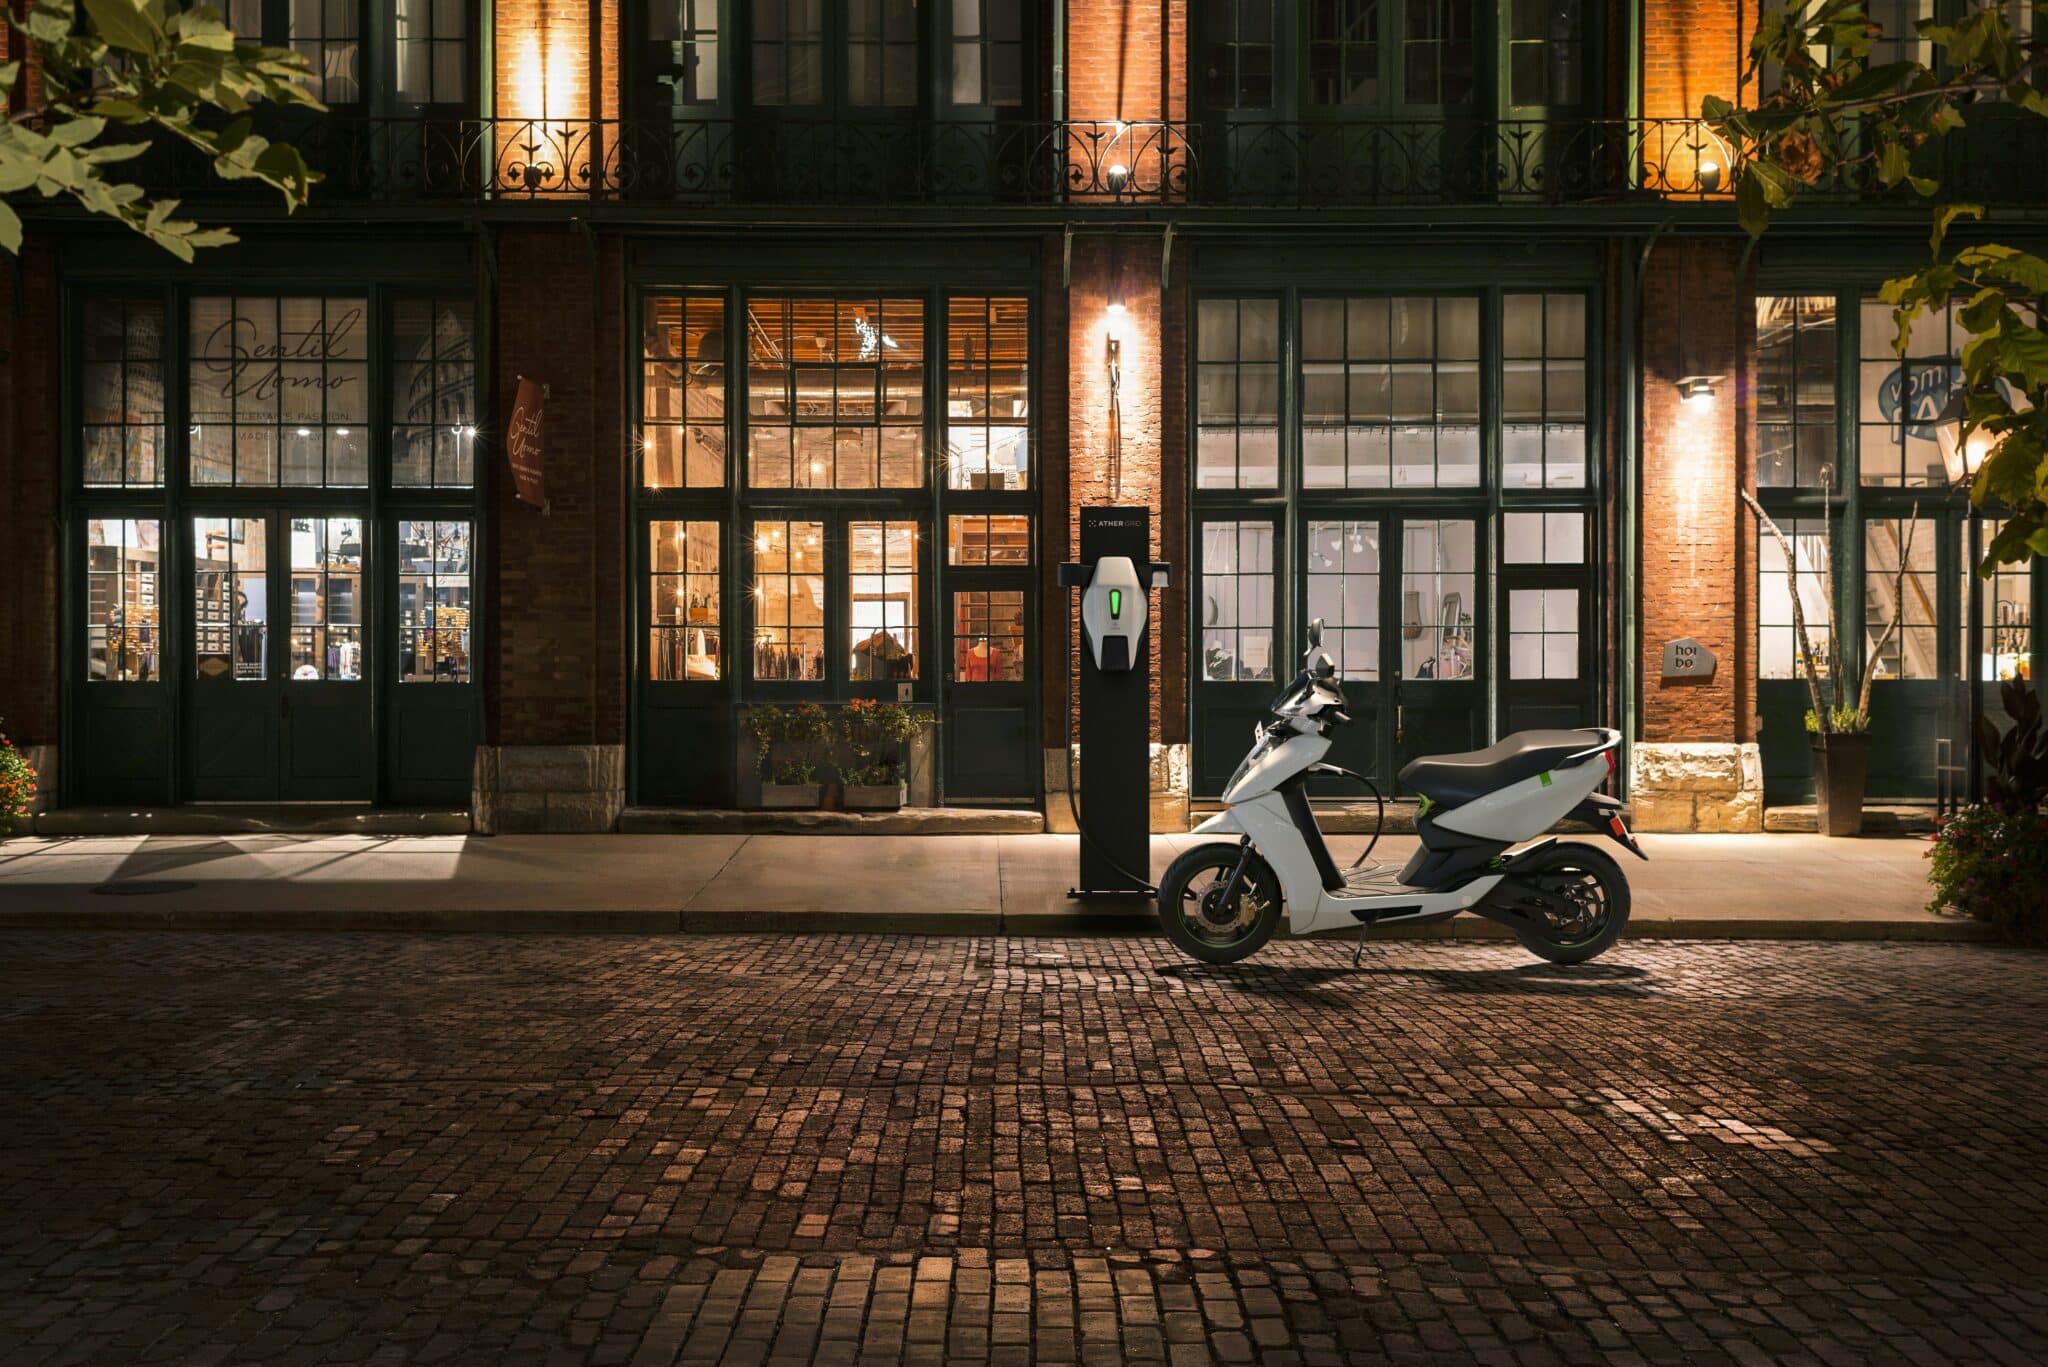 découvrez notre sélection de motos électriques pour une conduite écologique et innovante. explorez nos modèles de motos électriques et adoptez une alternative durable pour vos déplacements urbains.